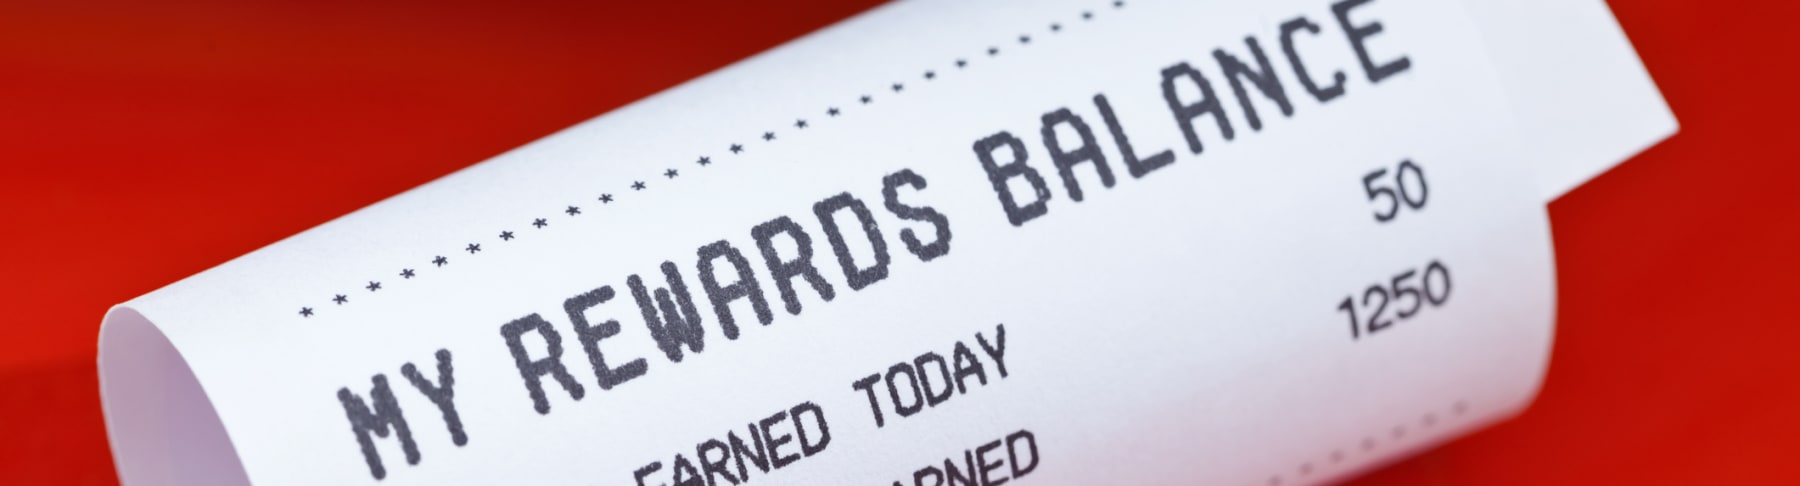 Rewards balance receipt shown on red background.